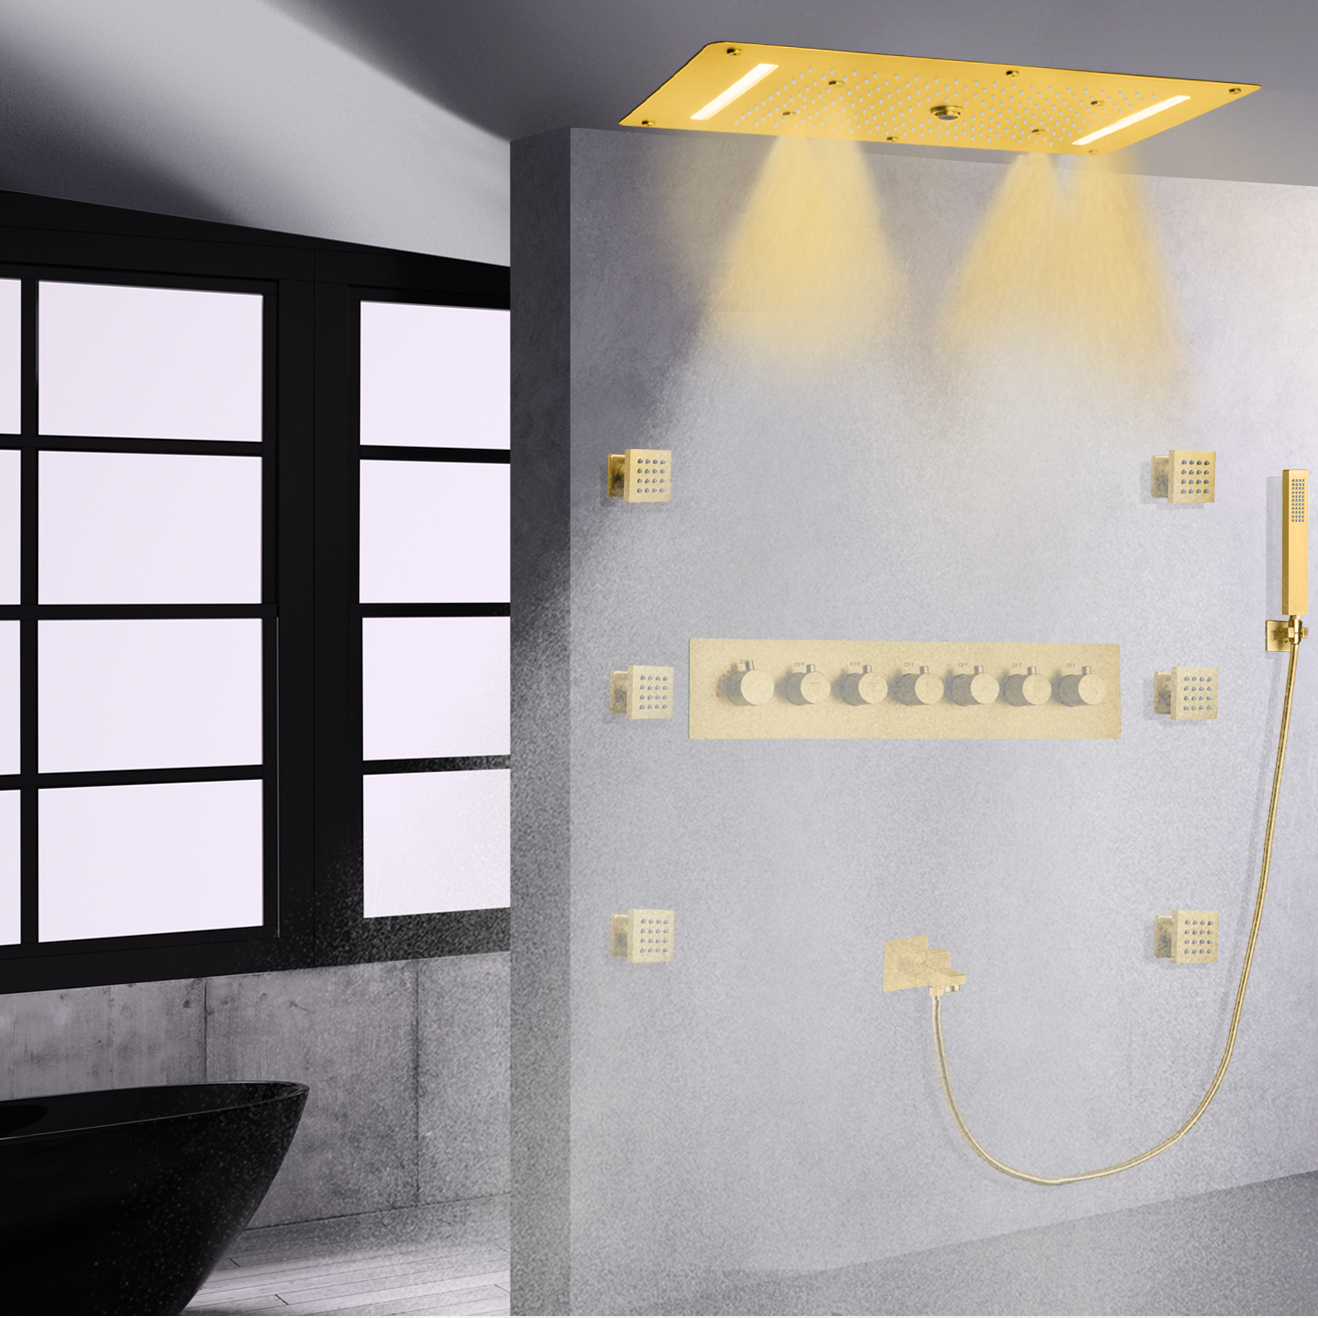 مجموعة كومبو محمولة باليد، خلاط دش مخفي بإضاءة LED باللون الذهبي المصقول وشلال الأمطار